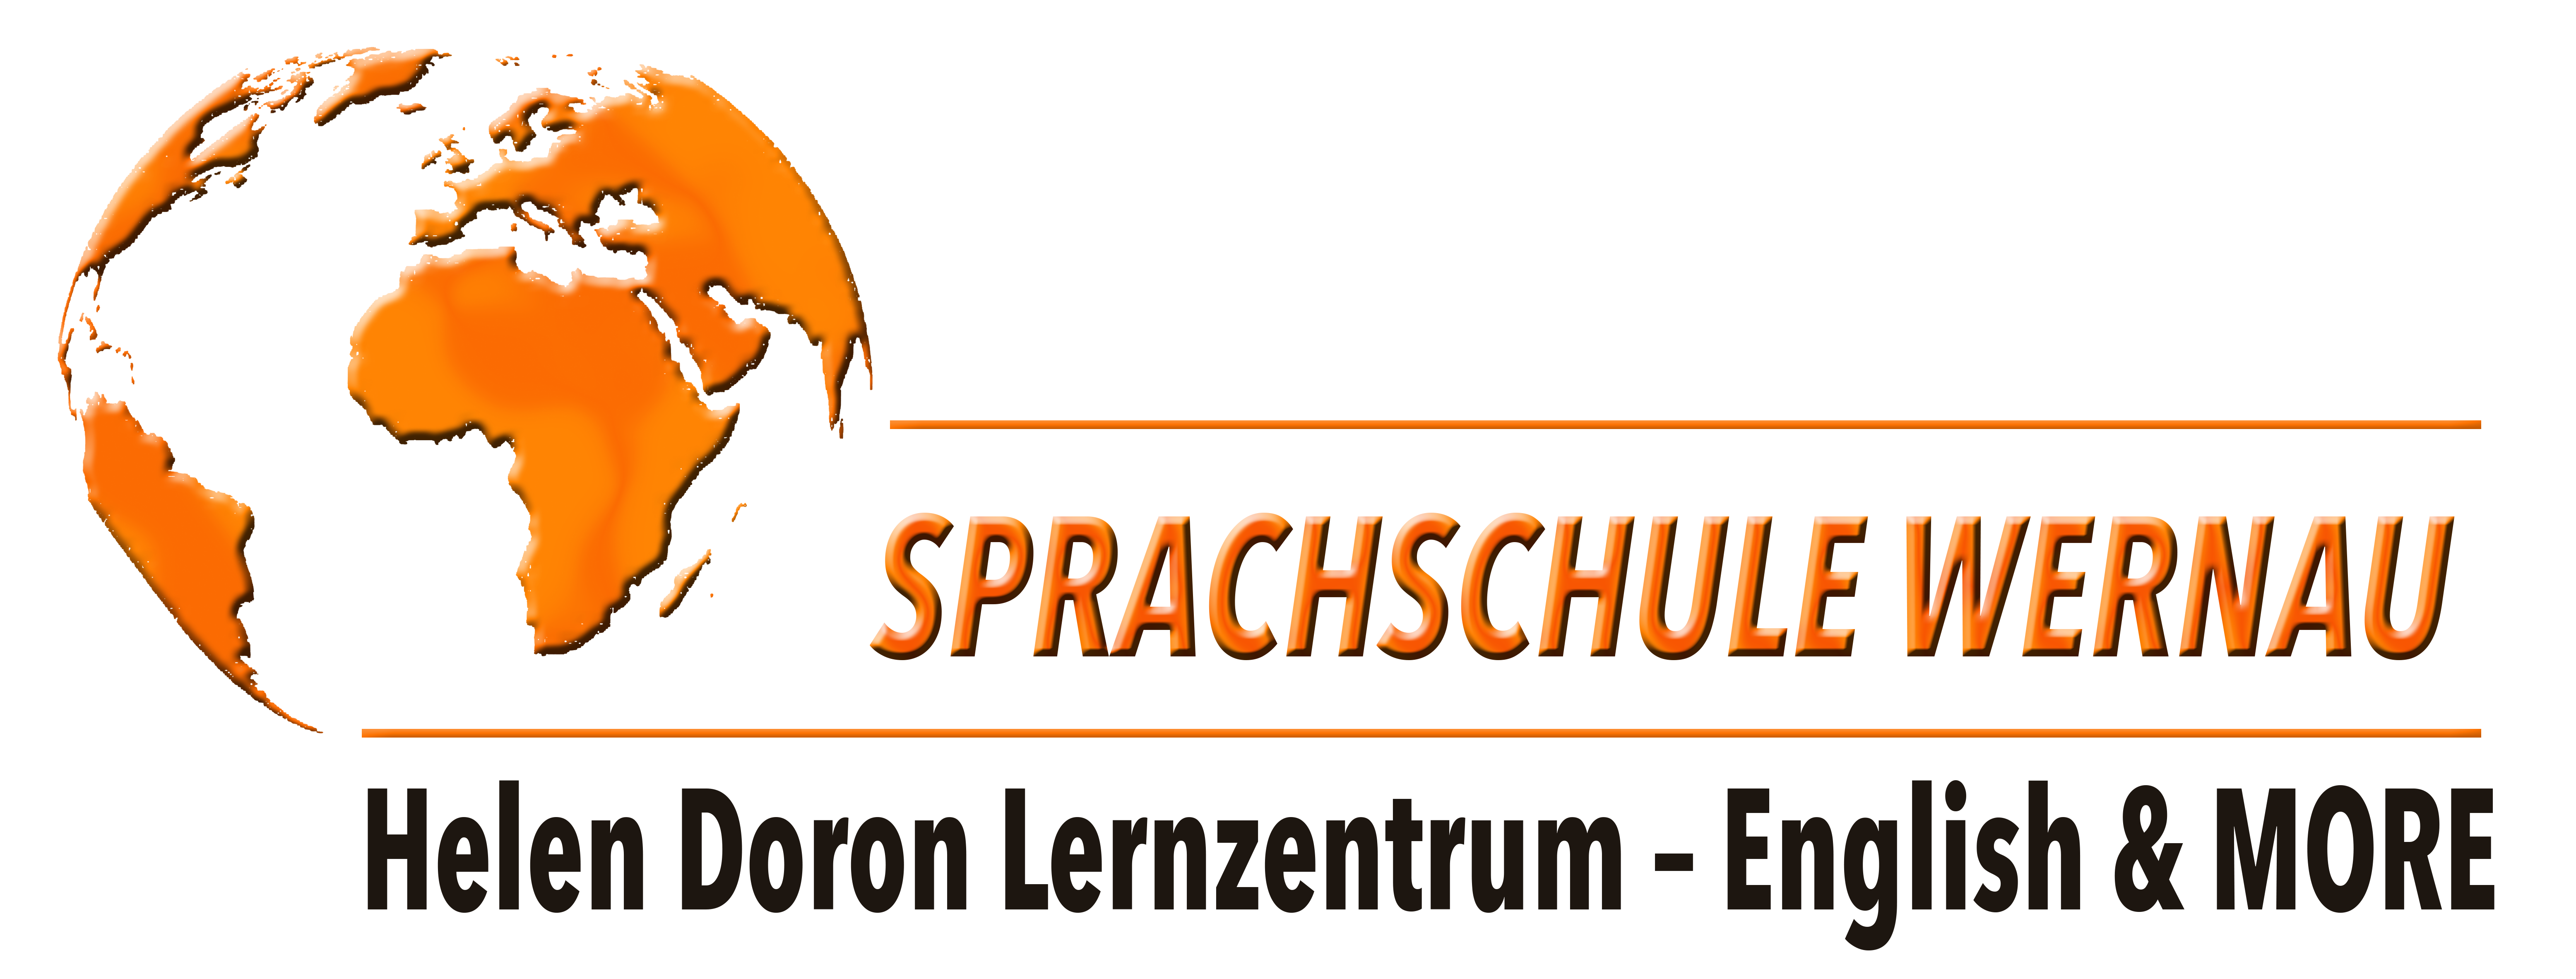 Sprachschule Wernau | Helen Dorn Lernzentrum | Stephanie Flad